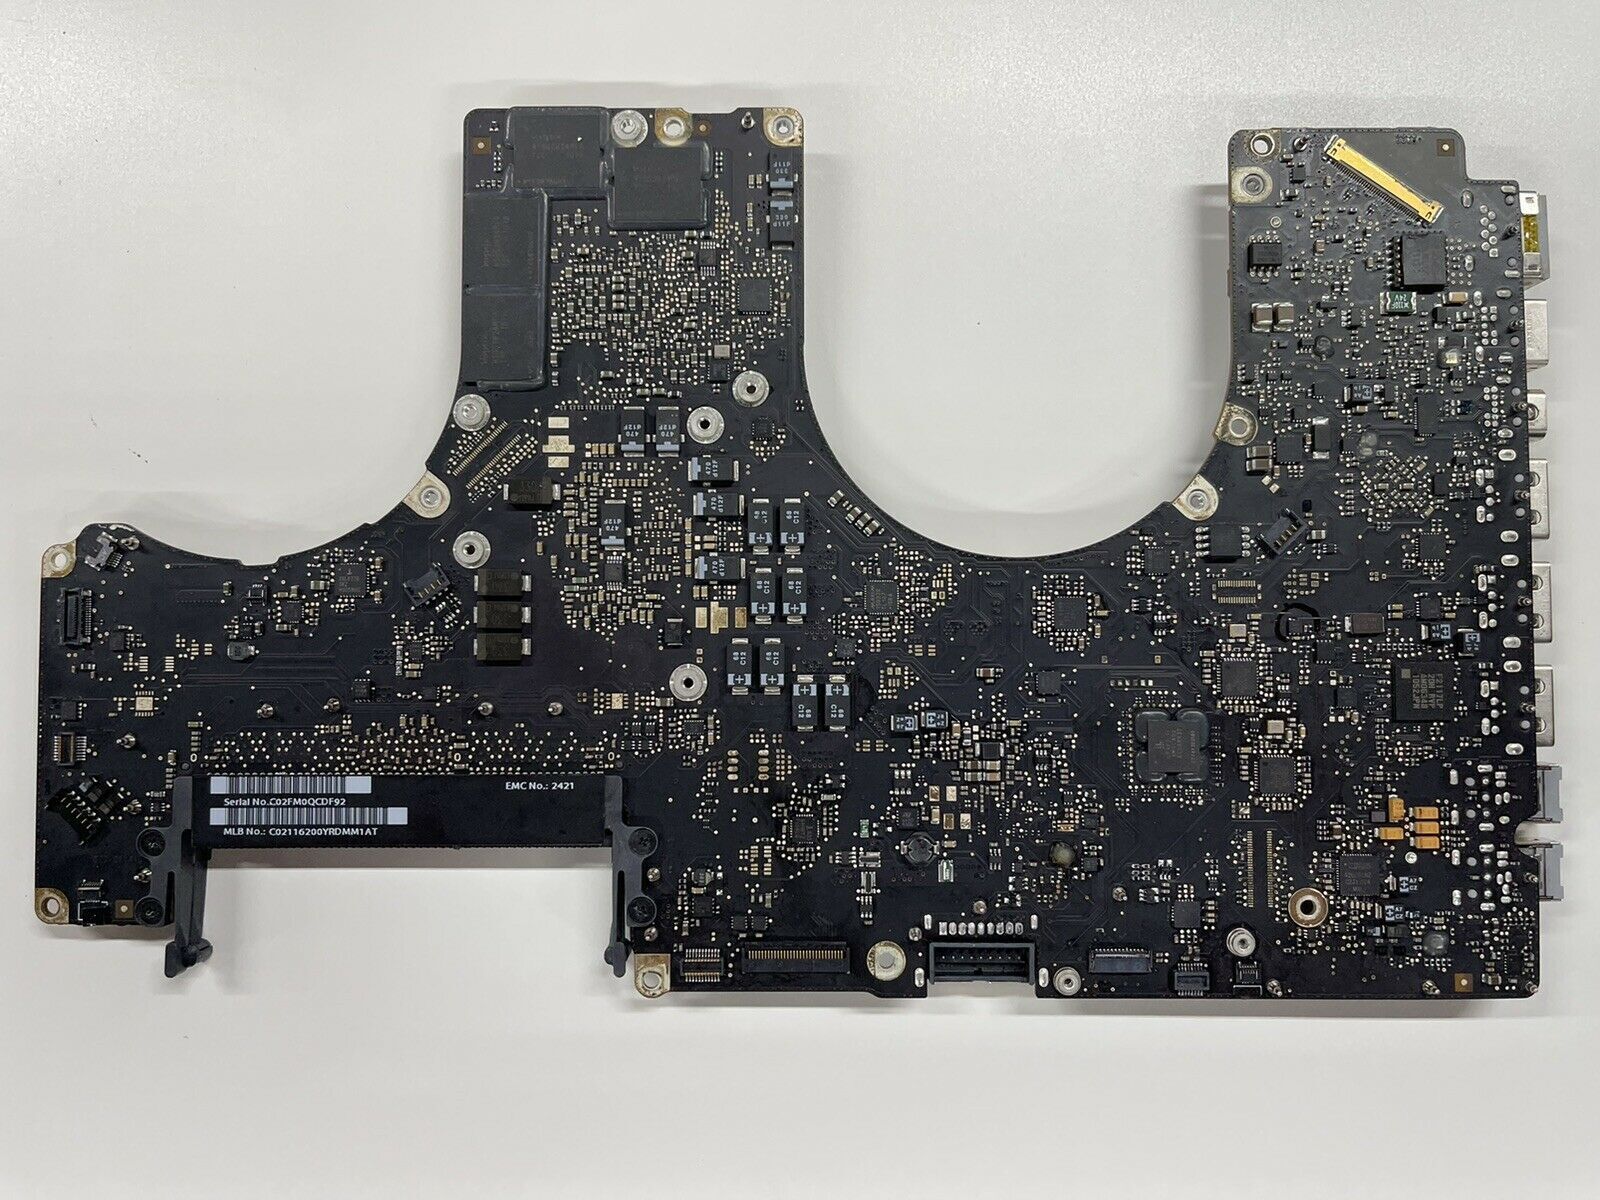 Macbook Pro 17 A1297 2011 Logic Board 820-2914 Motherboard Disabled GPU